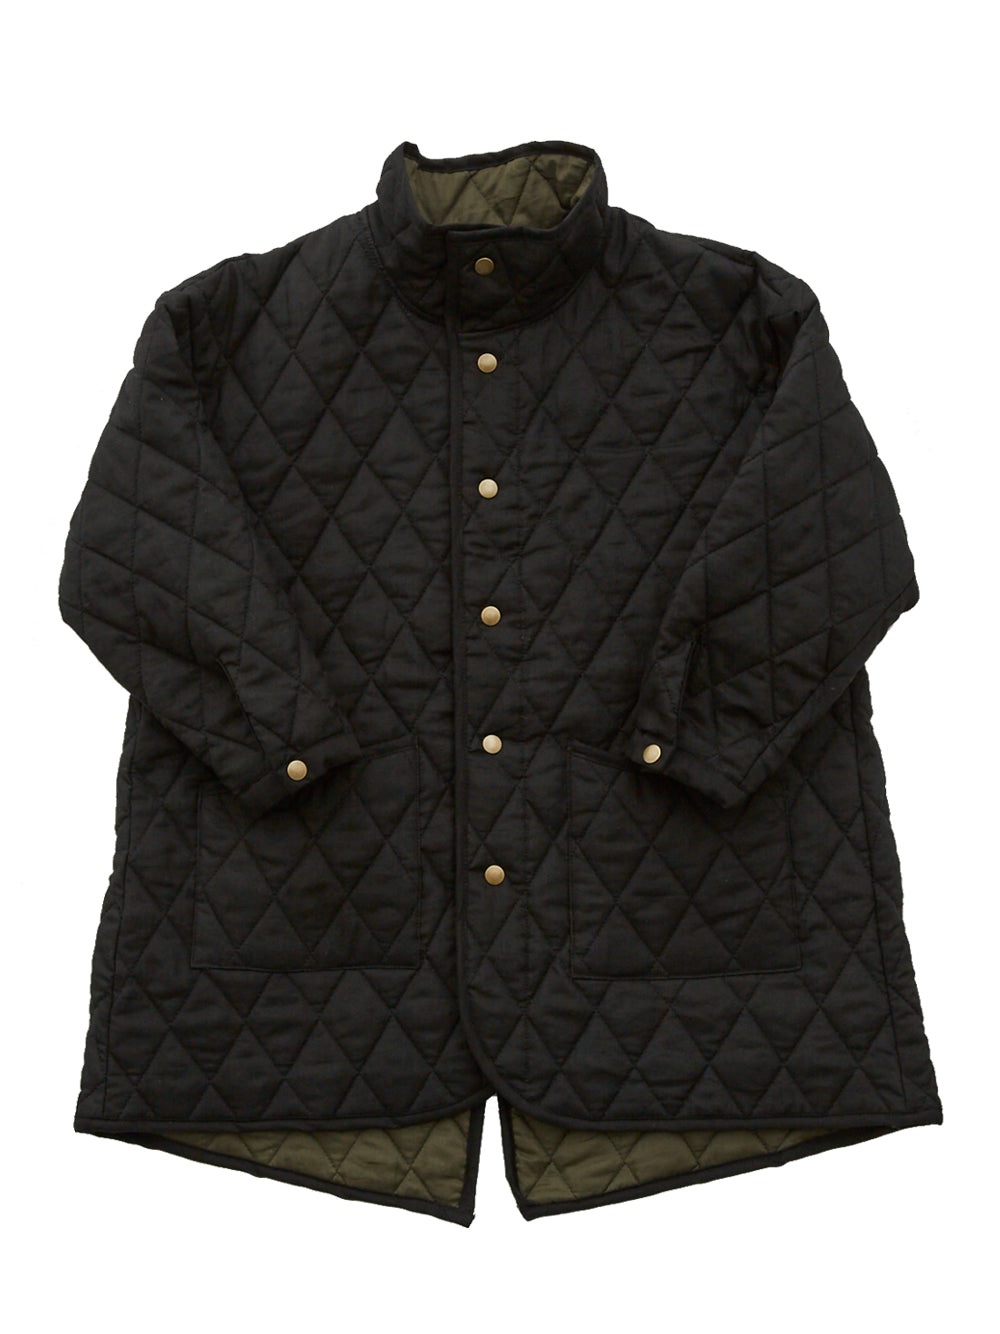 Cotton Lawn Quilt Black Coat